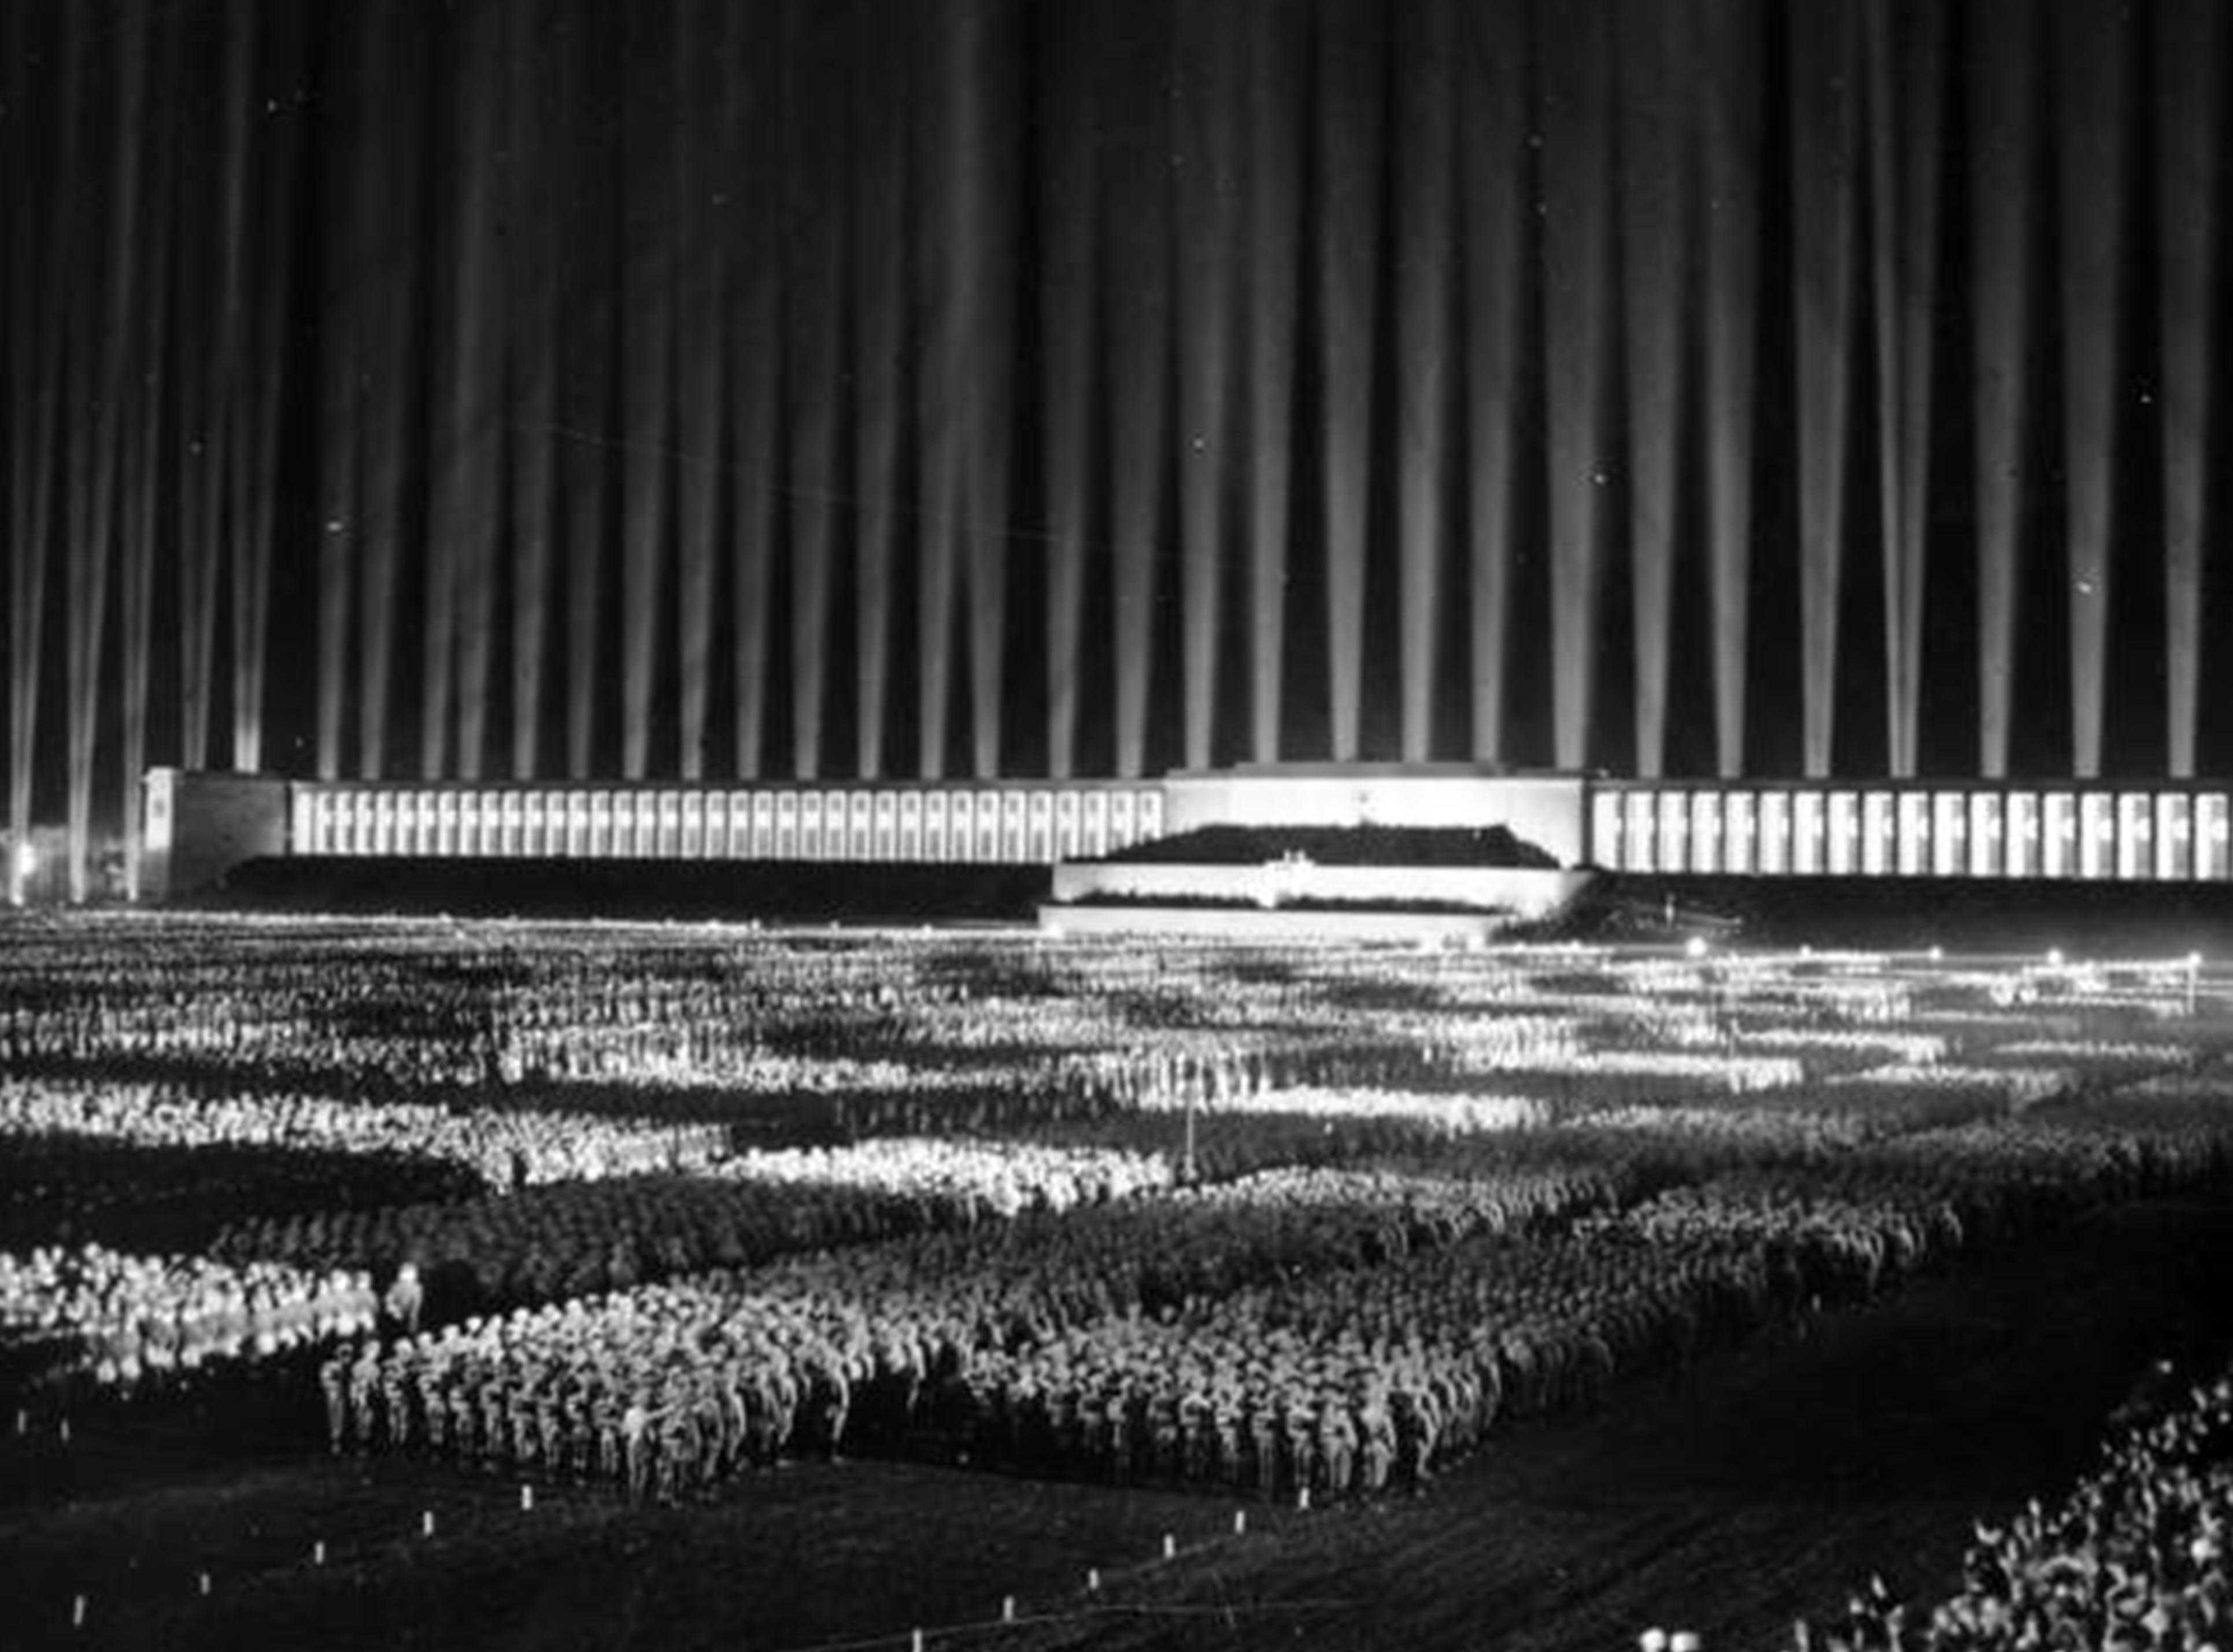 Die Abbildung zeigt den Ausschnitt einer Propagandapostkarte, auf der der inszenierte Lichtdom anlässlich des Reichsparteitags 1936 zu sehen ist. Die Aufnahme stammt aus dem Bundesarchiv und trägt die Signatur Bild 183-1982-1130-502.